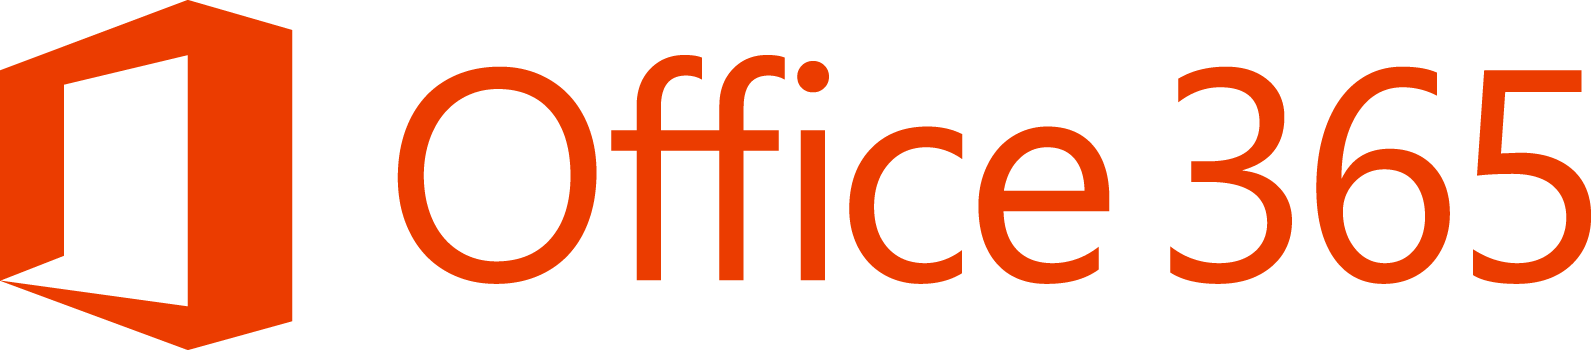 Microsoft: będzie duża aktualizacja Office 365